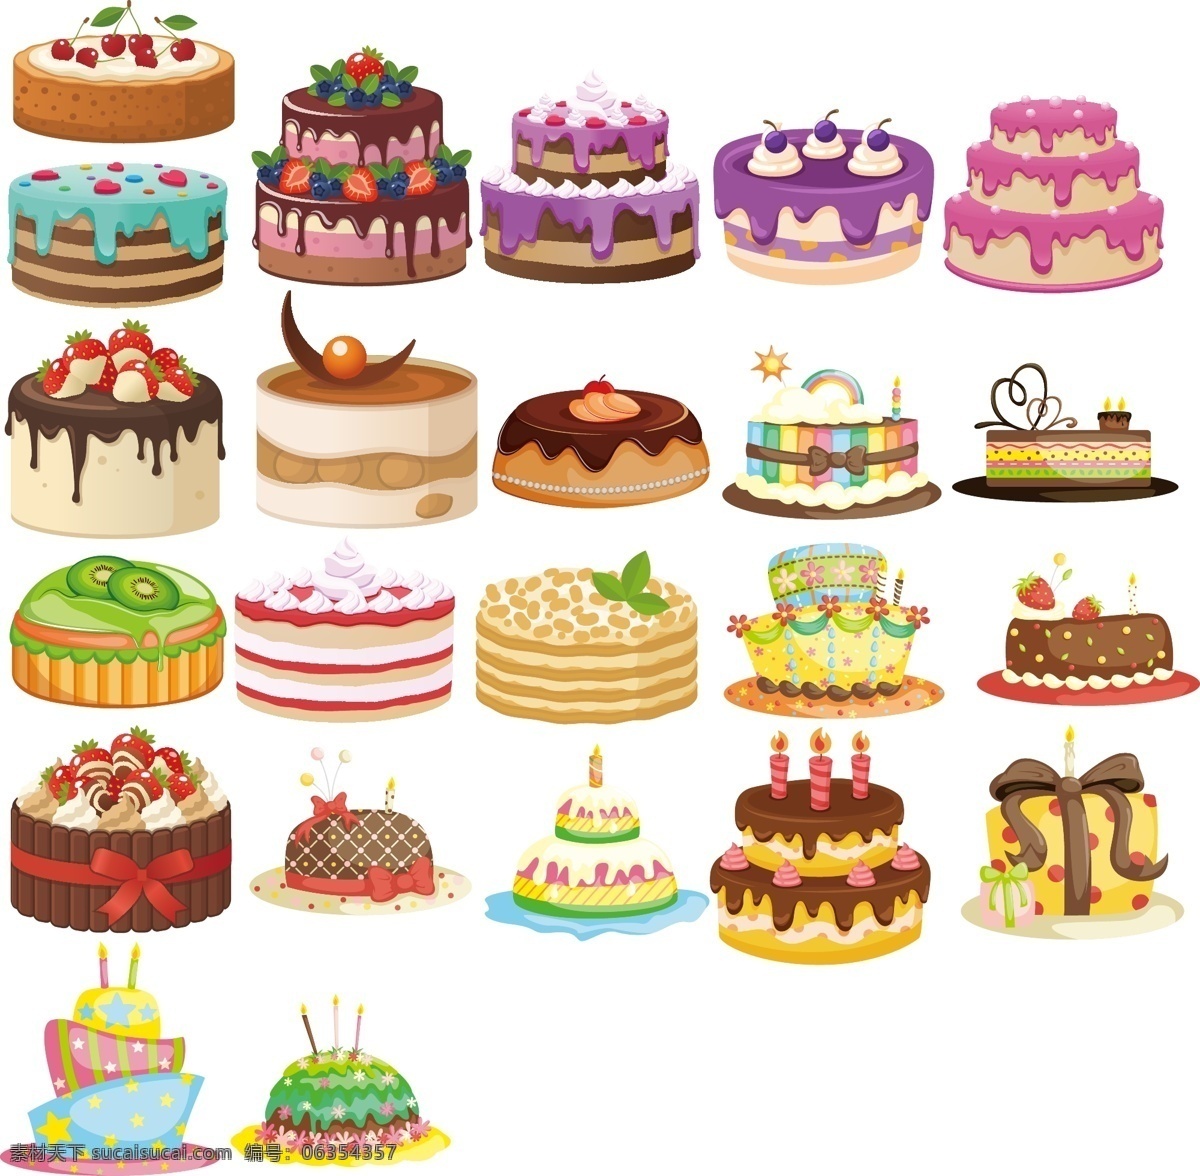 蛋糕图片 广告素材 生日蛋糕 蛋糕 矢量集 生活百科 餐饮美食